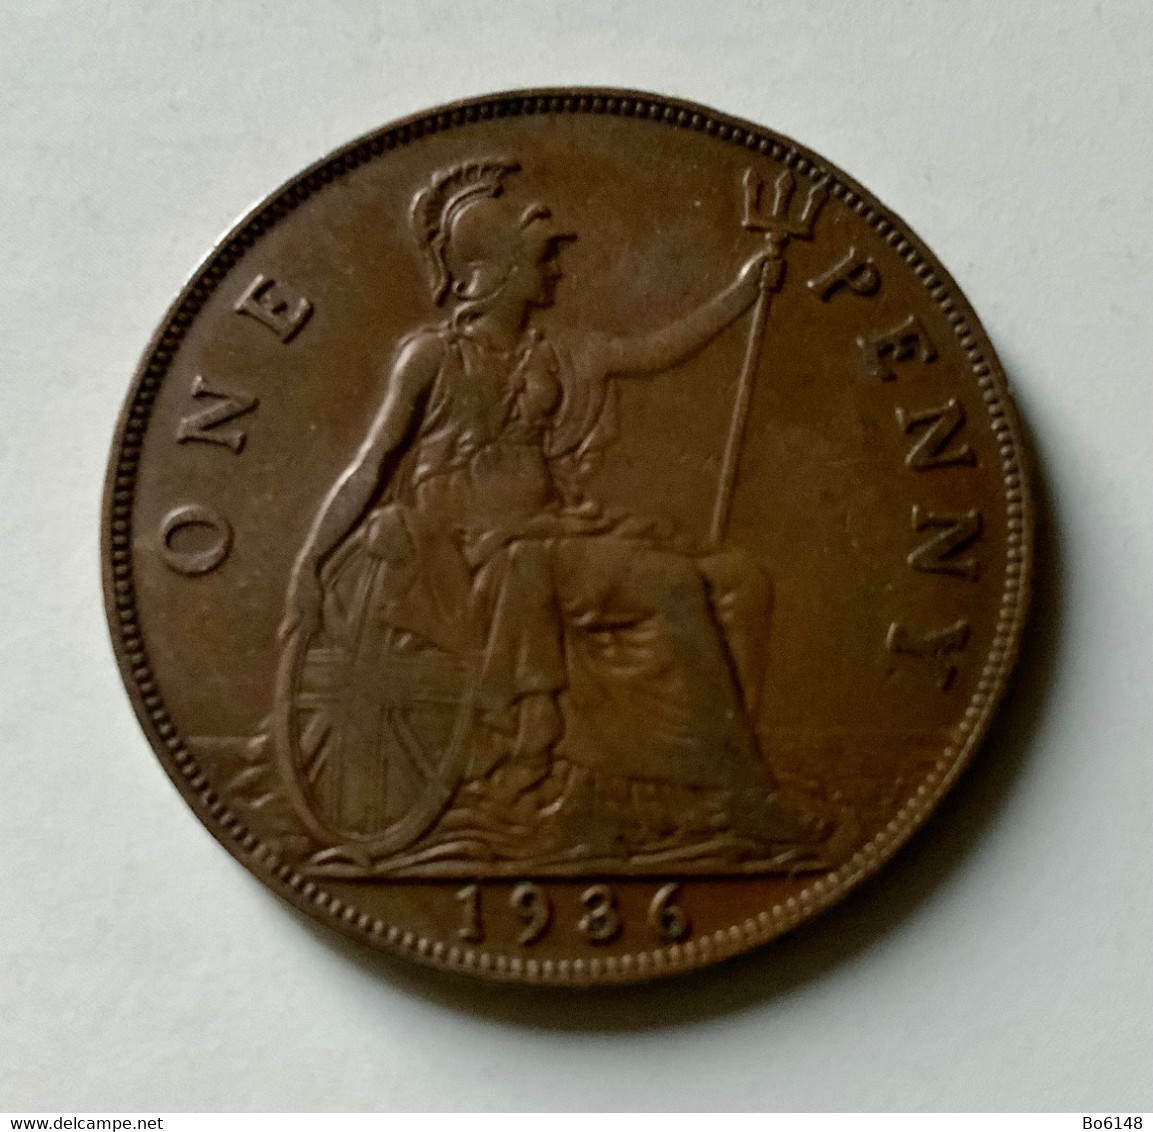 GRAN BRETAGNA  - ENGLAND  1936  Moneta 1 PENNY Giorgio V - E. 2 Pence